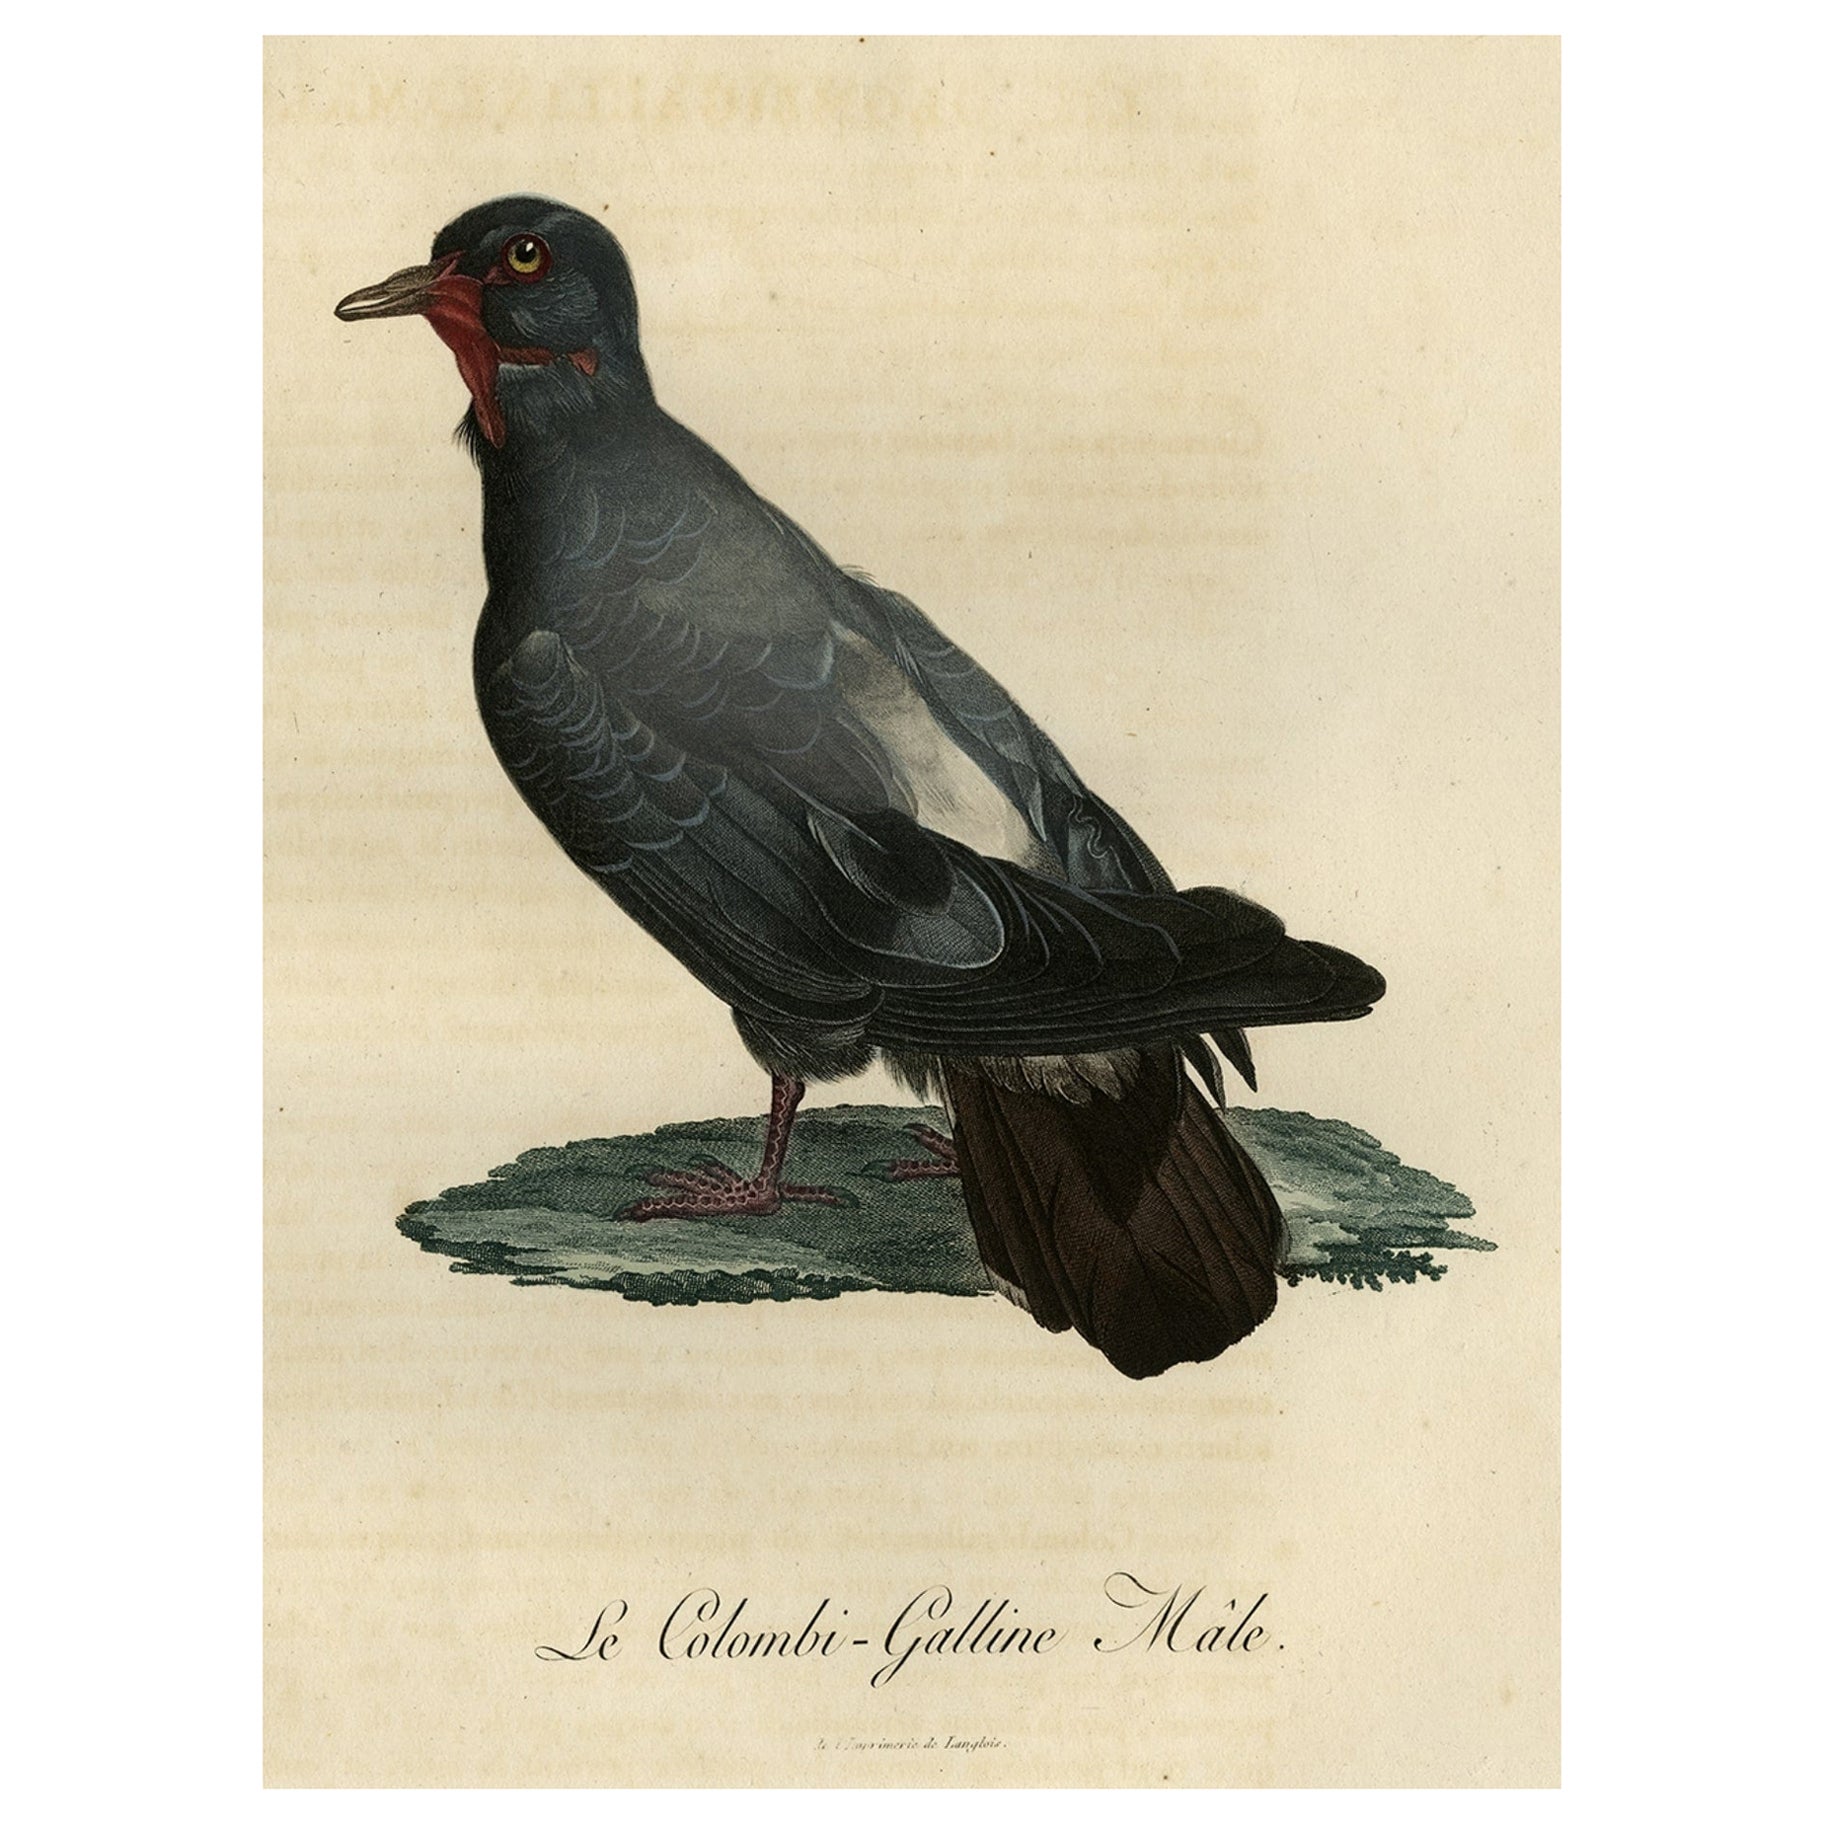 Impression oiseau antique colorée à la main d'une colombe nommée Le Colombi-Galline, homme, 1800